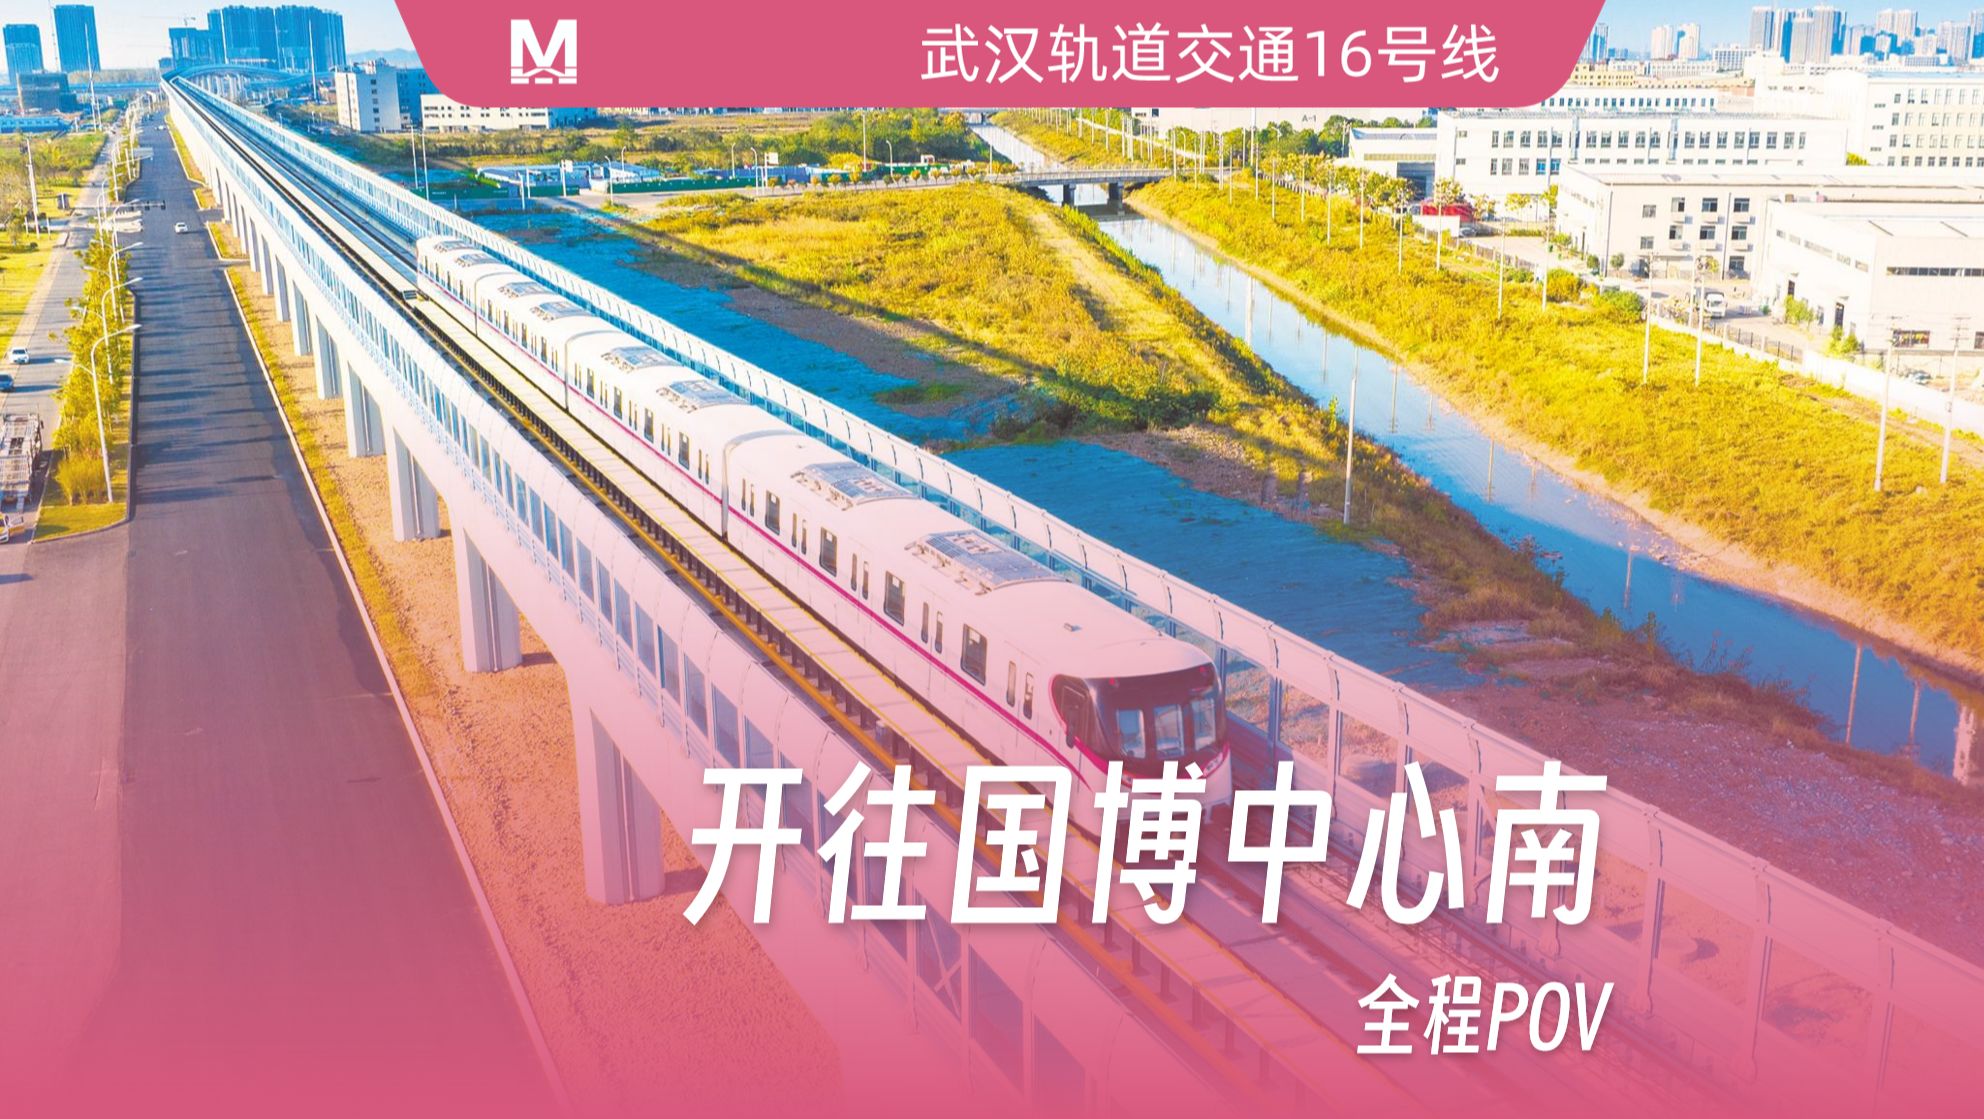 【武汉地铁】「最美线路 直通汉南」 武汉地铁16号线全程第一视角pov